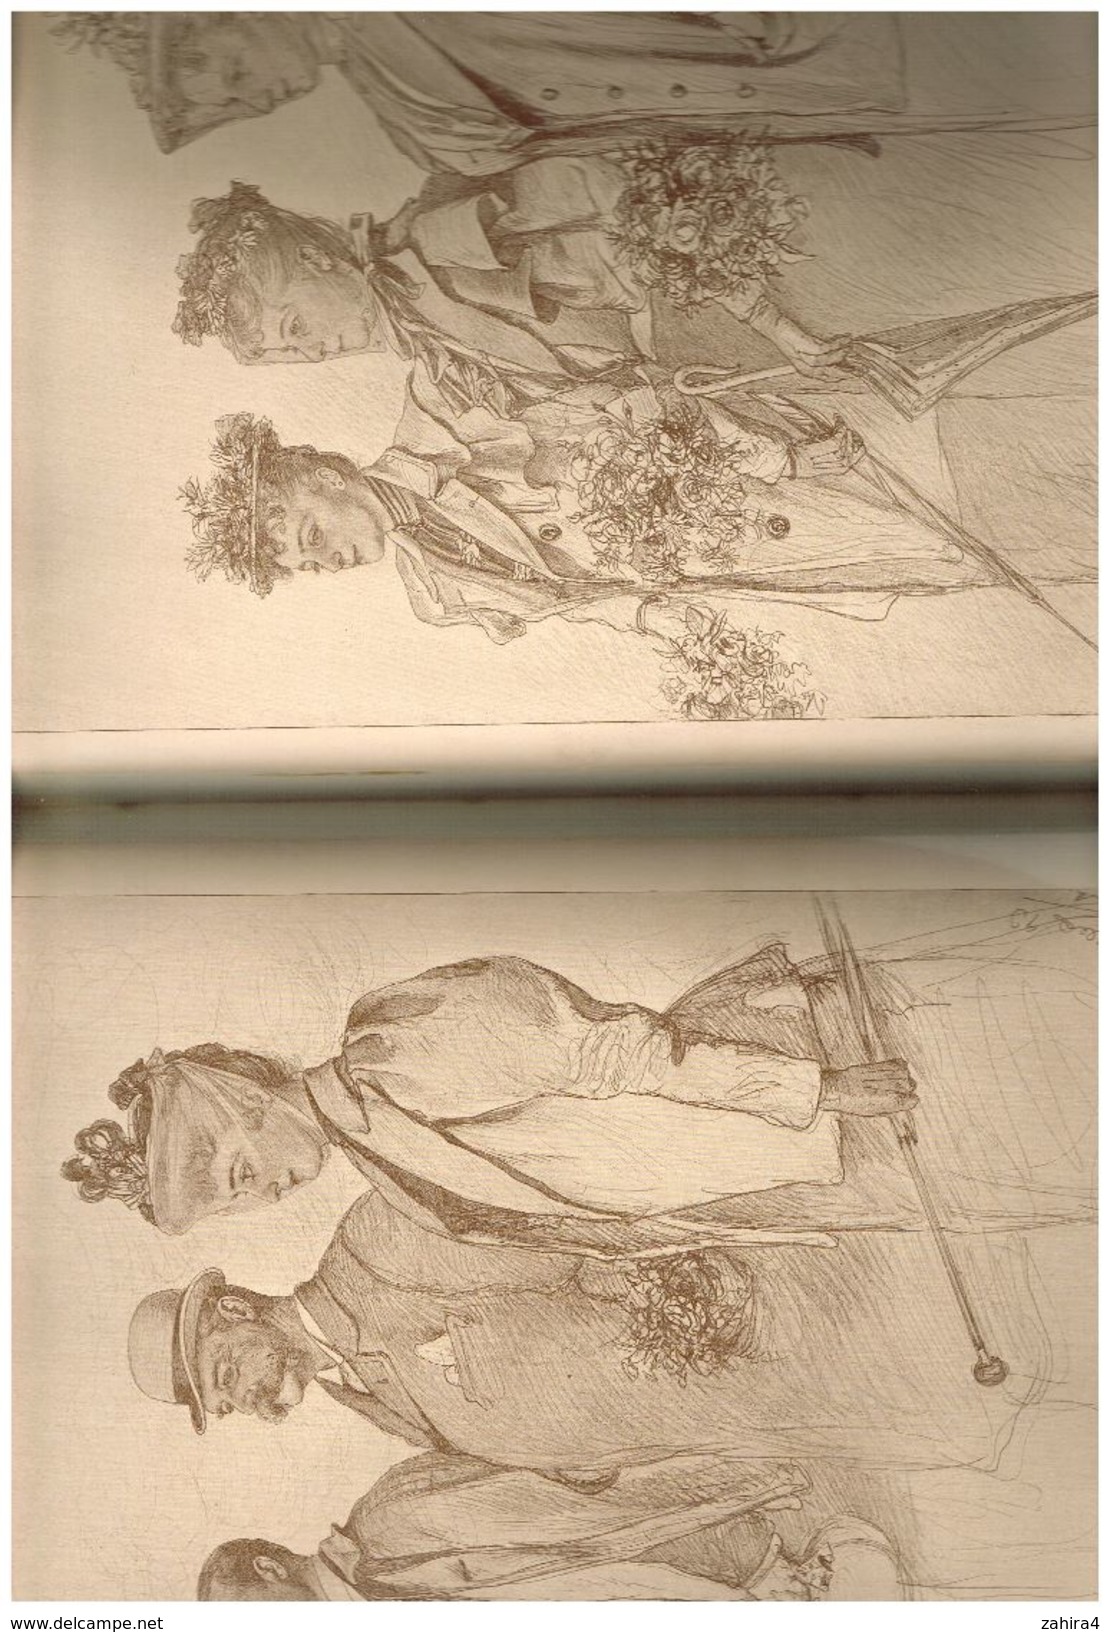 Illustrateur Trés rare Unser Bismarck Style BD 150 dessins 250 X 340 signés avec nom date commentaire Rédigé en gothique